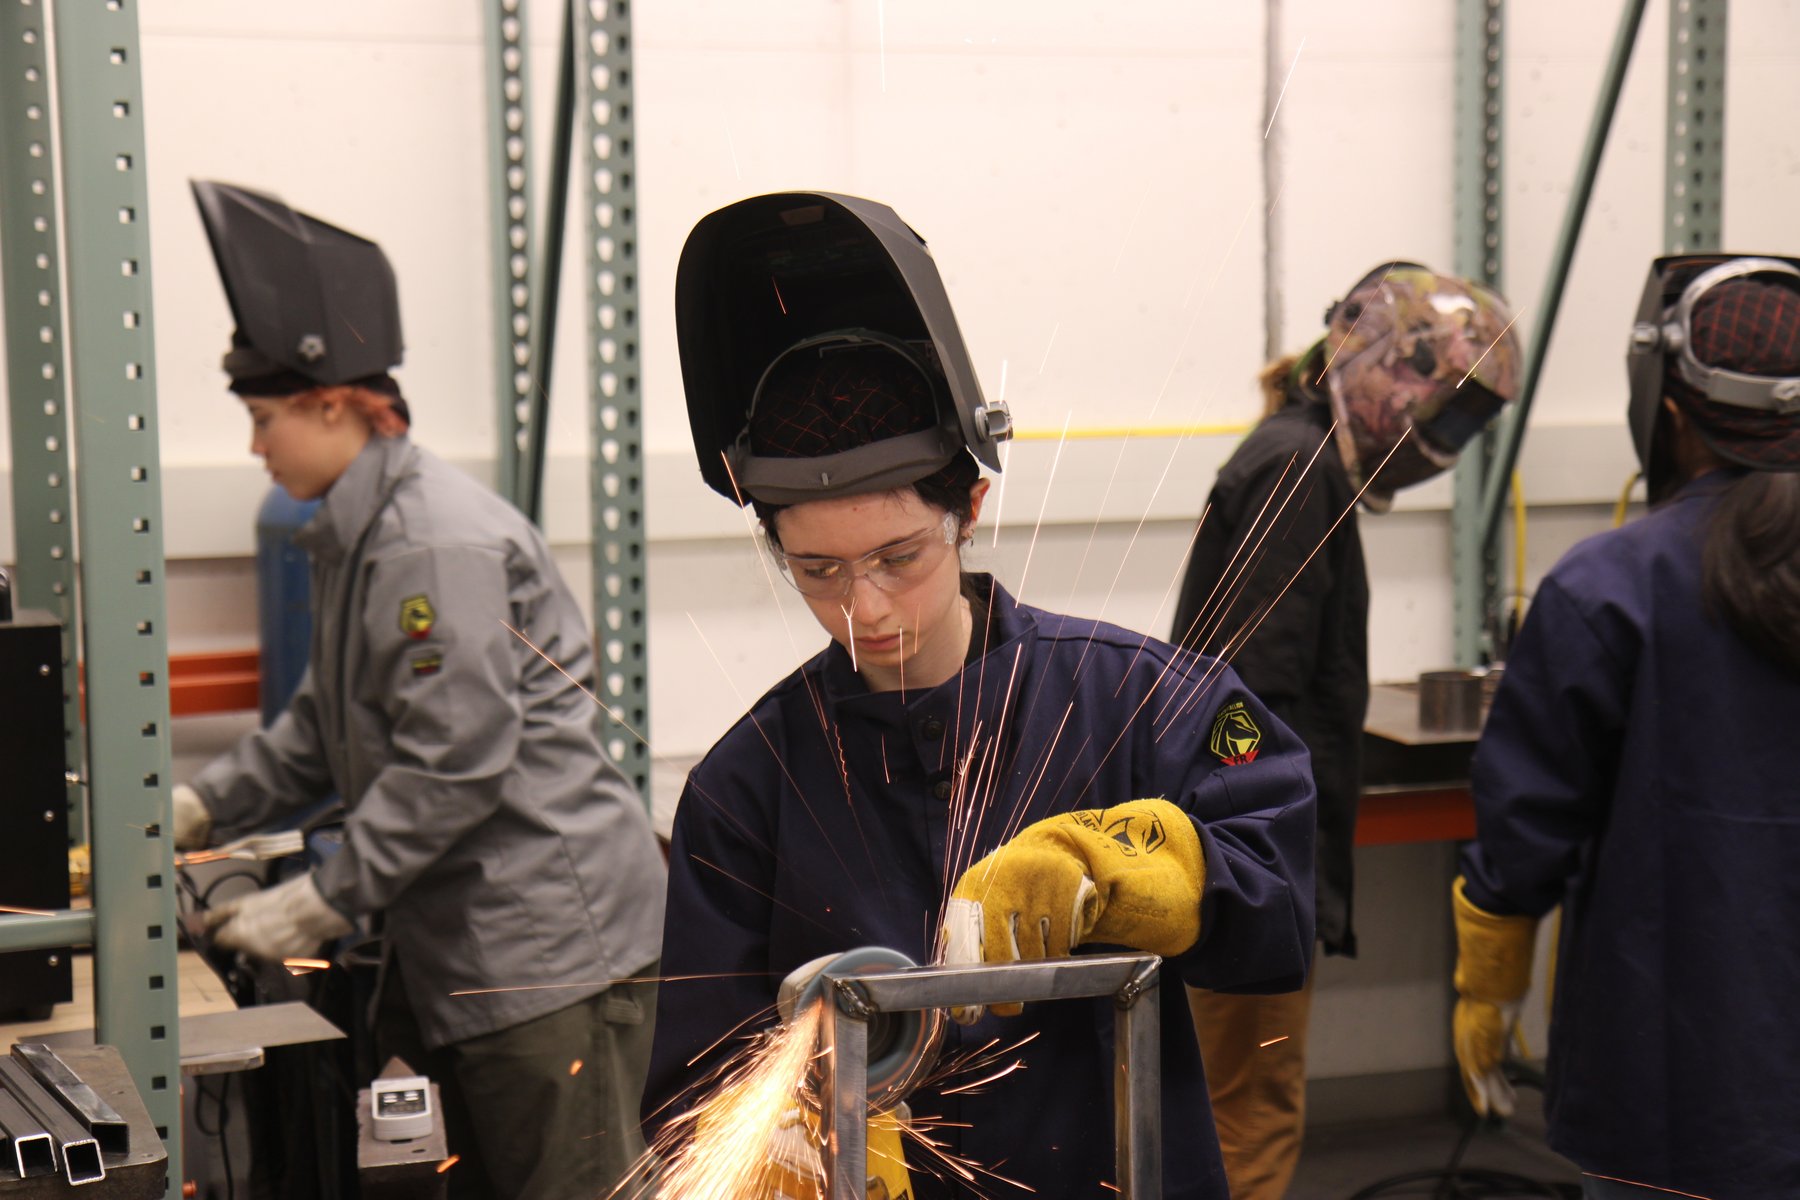 Sculpture II: Metal class. Students practicing welding.